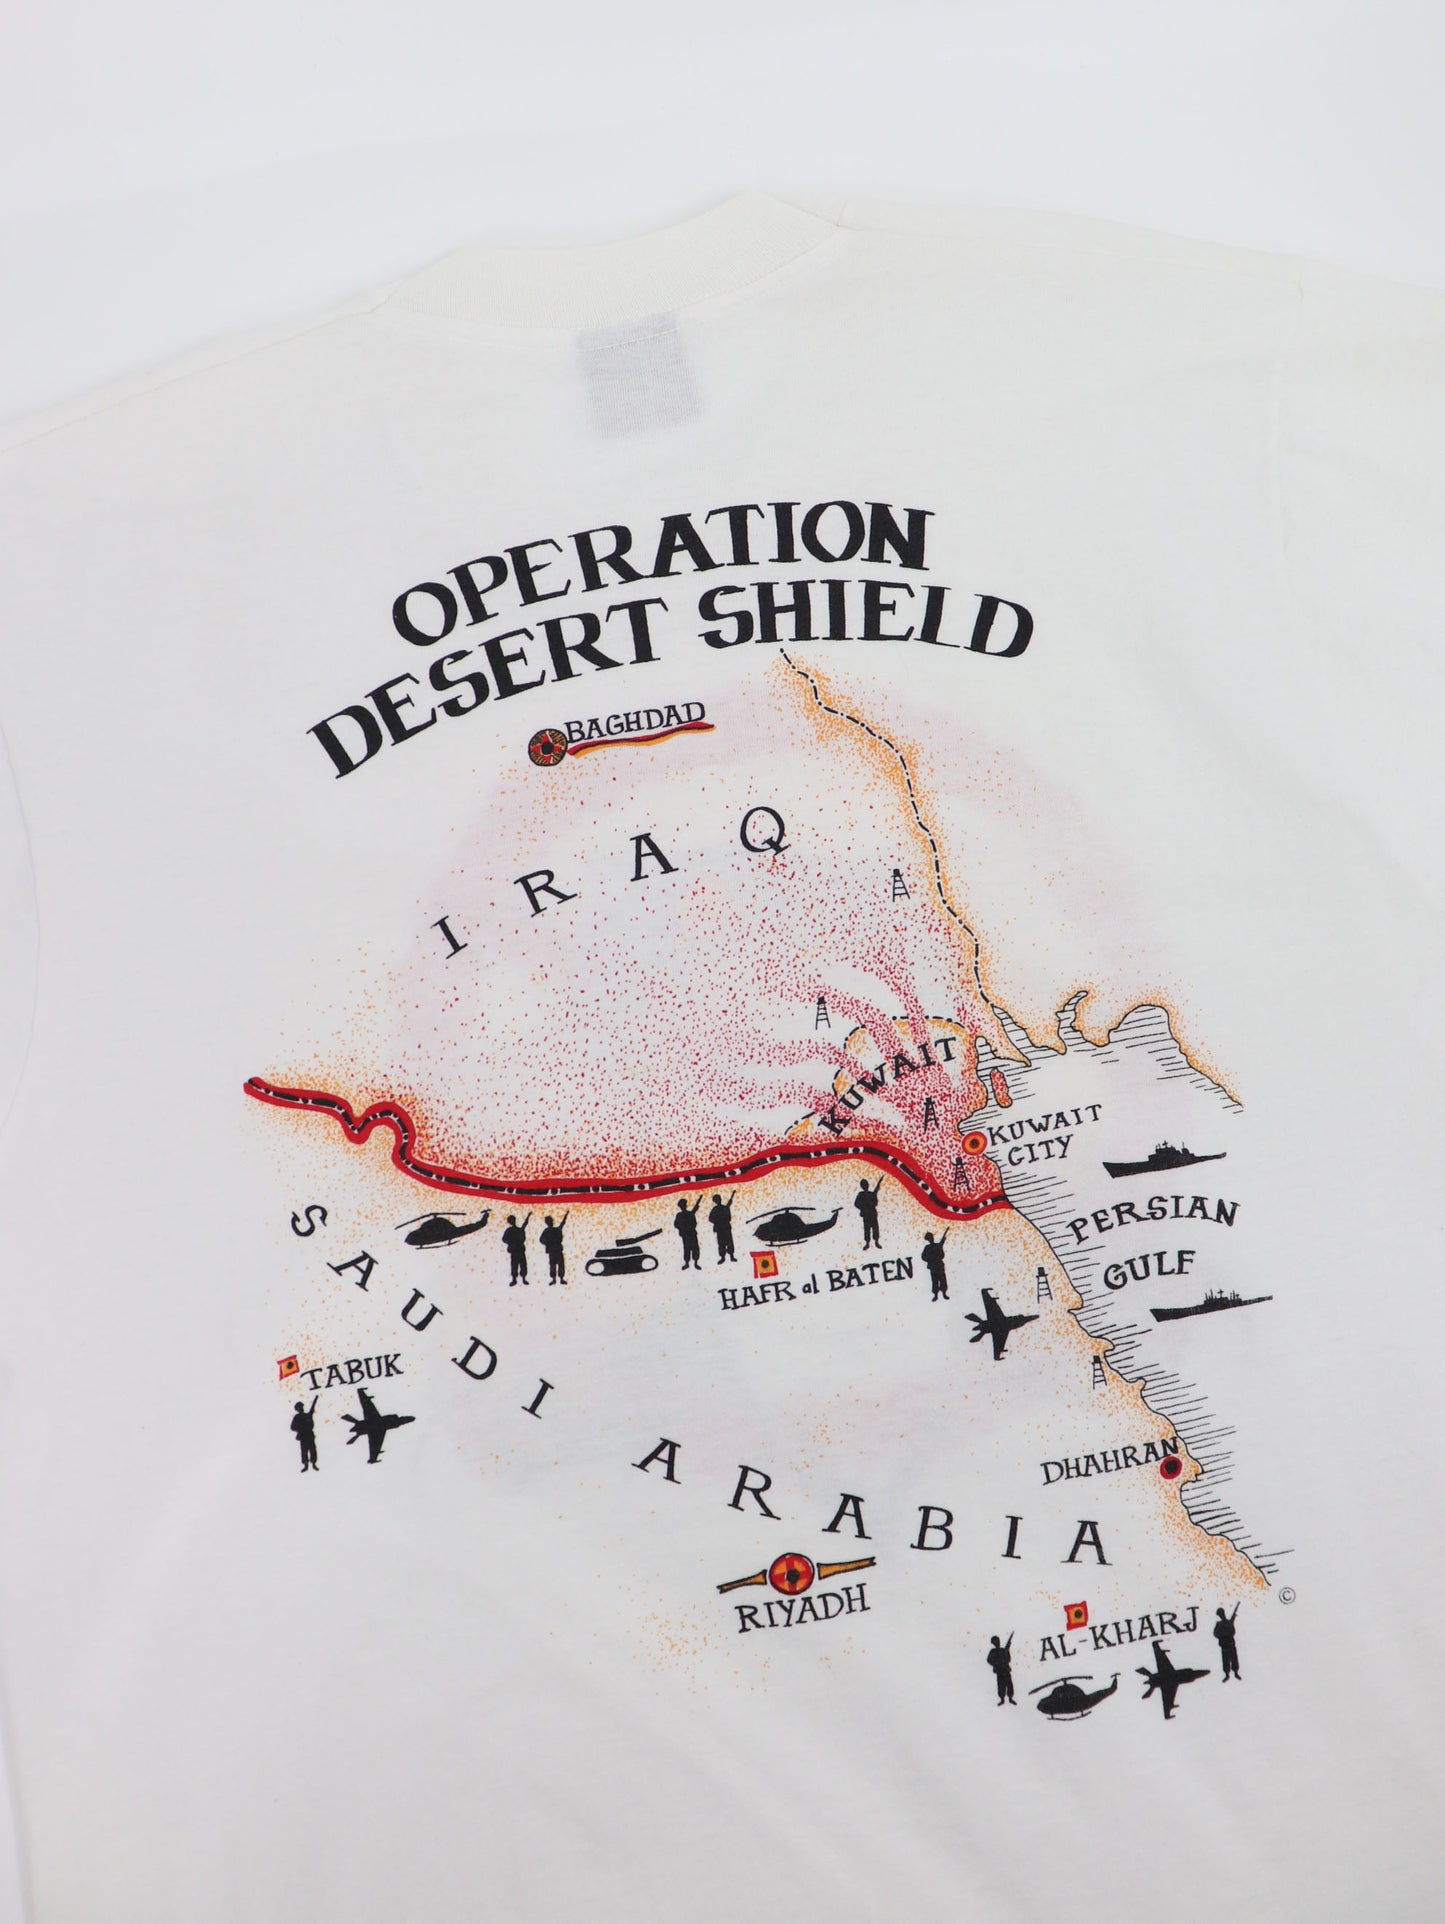 THE GULF WAR OPERATION DESERT SHIELD 1991 MADE IN USA